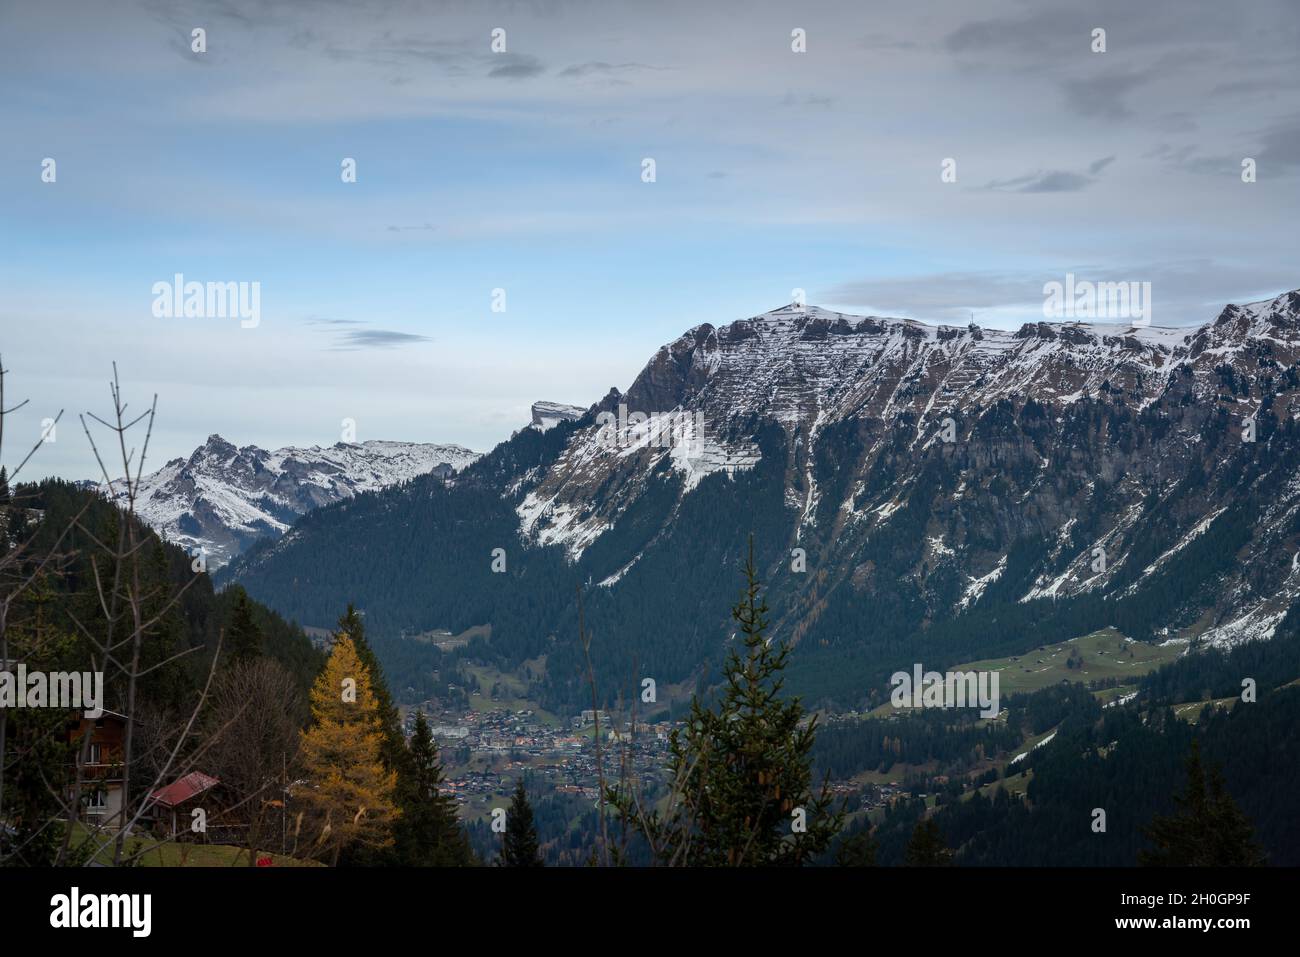 Mannlichen Mountain in the Bernese Alps stays above Wengen Village - Murren, Switzerland Stock Photo